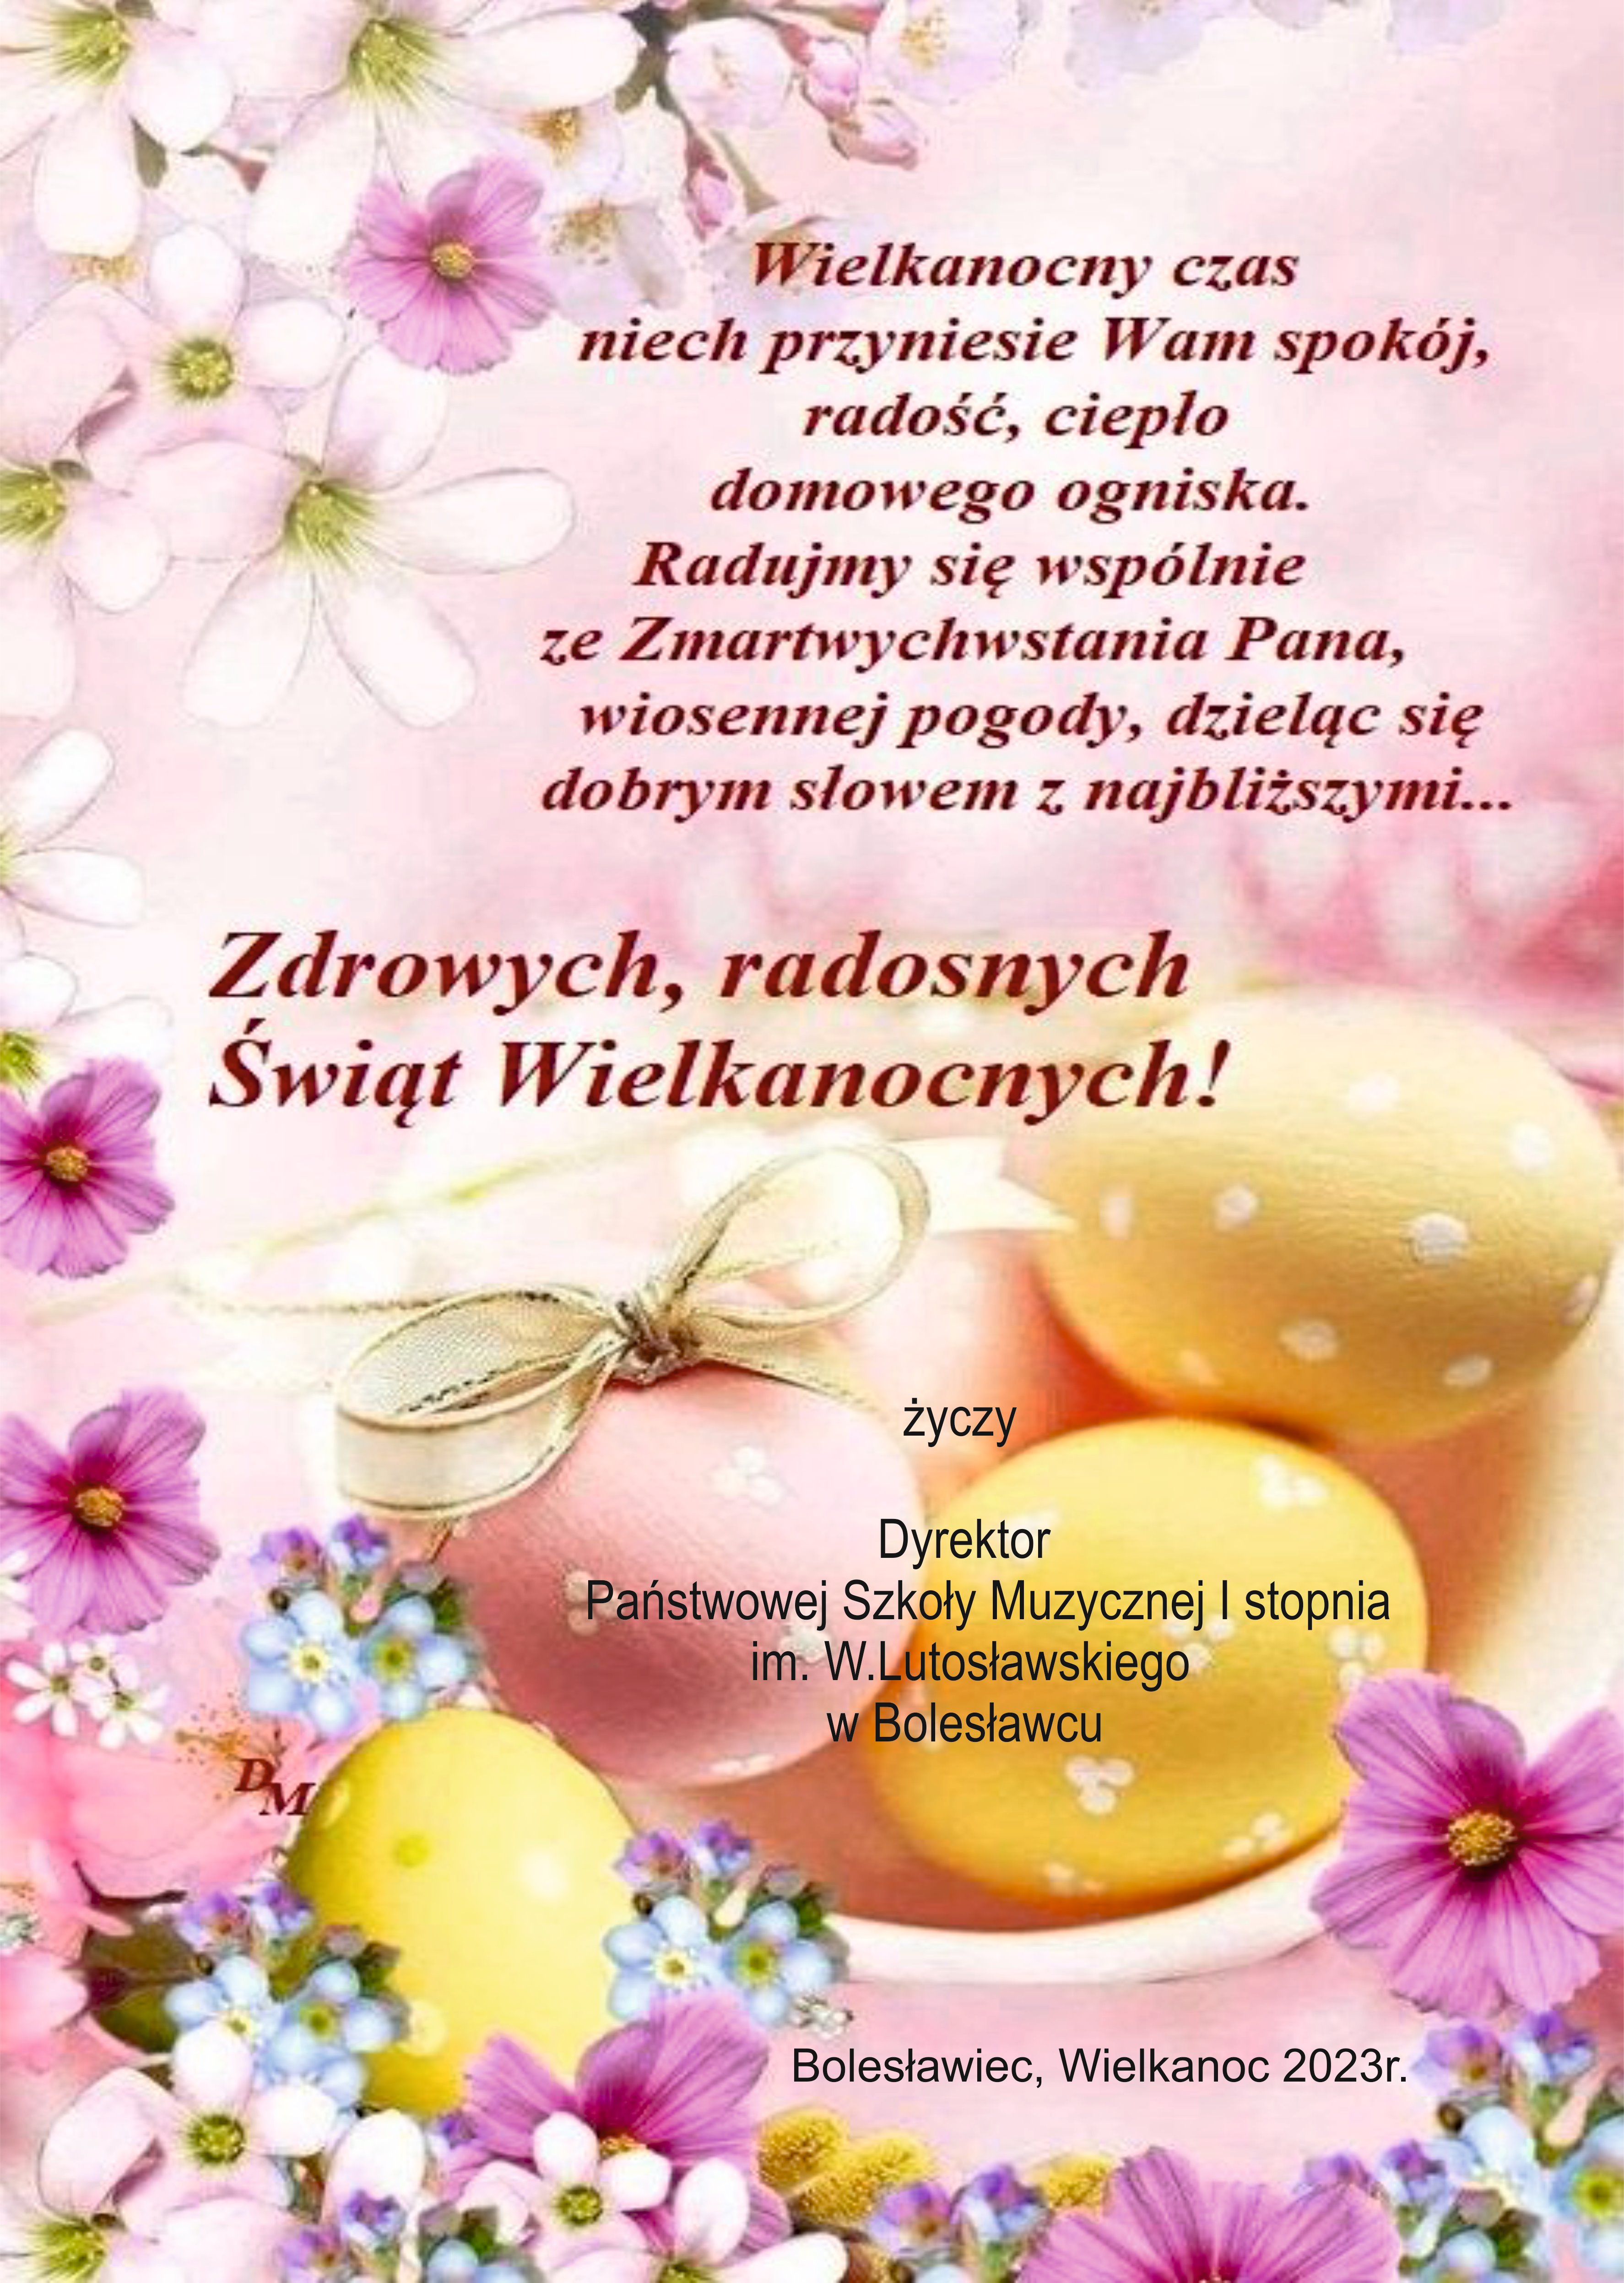 Grafika w kolorach purpurowych z symboliką świąt Wielkanocnych, to jest kwiatów i pisanek. W tle tekst: "Wielkanocny czas niech przyniesie Wam spokój, radość, ciepło domowego ogniska. Radujmy się wspólnie ze Zmartwychwstania Pana, wiosennej pogody, dzieląc się dobrym słowem z najbliższymi... Zdrowych, radosnych Świąt Wielkanocnych! życzy Dyrektor Państwowej Szkoły Muzycznej I stopnia im. W. Lutosławskiego w Bolesławcu. Bolesławiec, Wielkanoc 2023 rok."